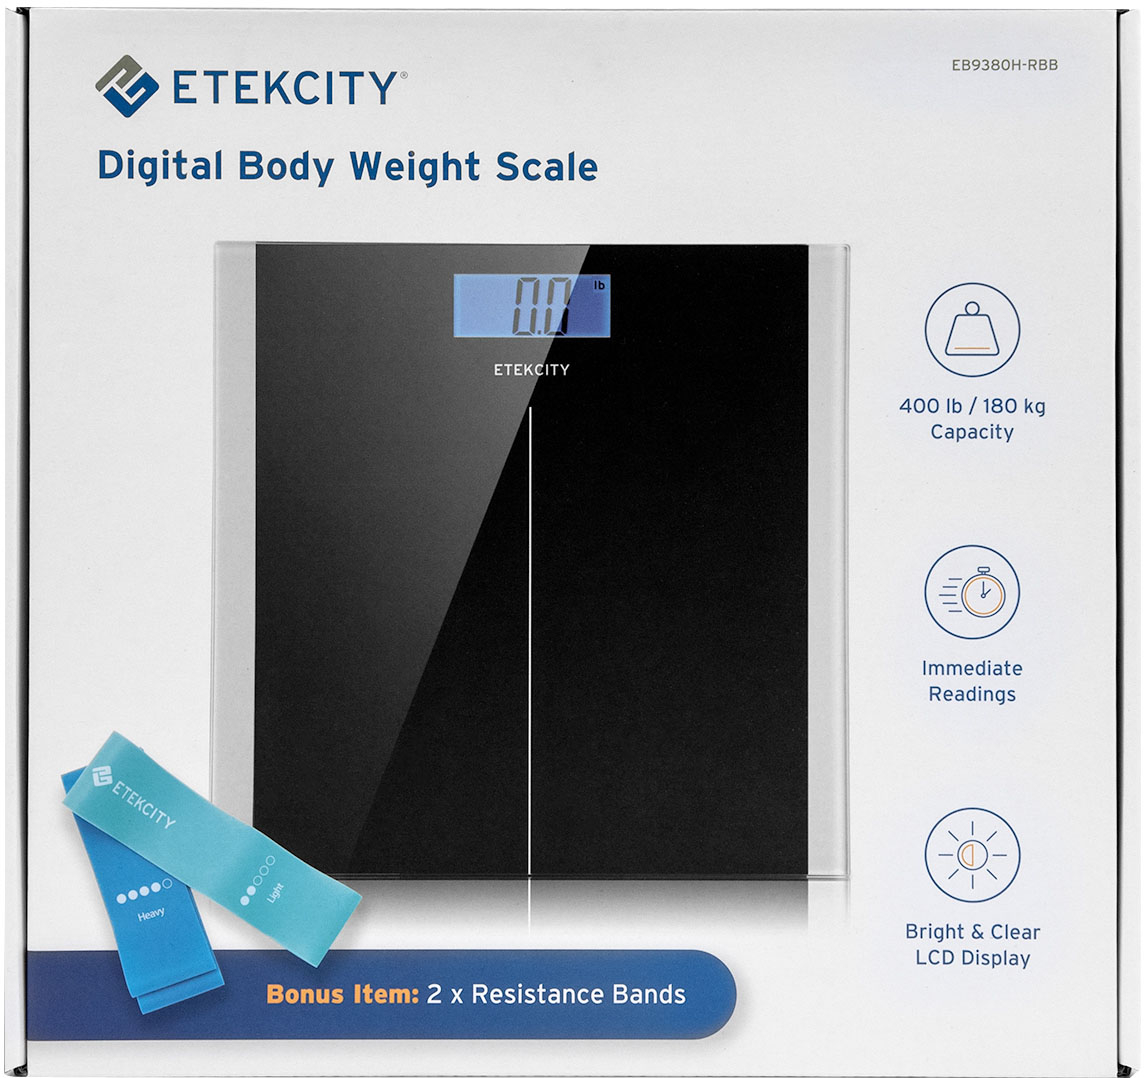  Etekcity Bathroom Scale for Body Weight, Digital